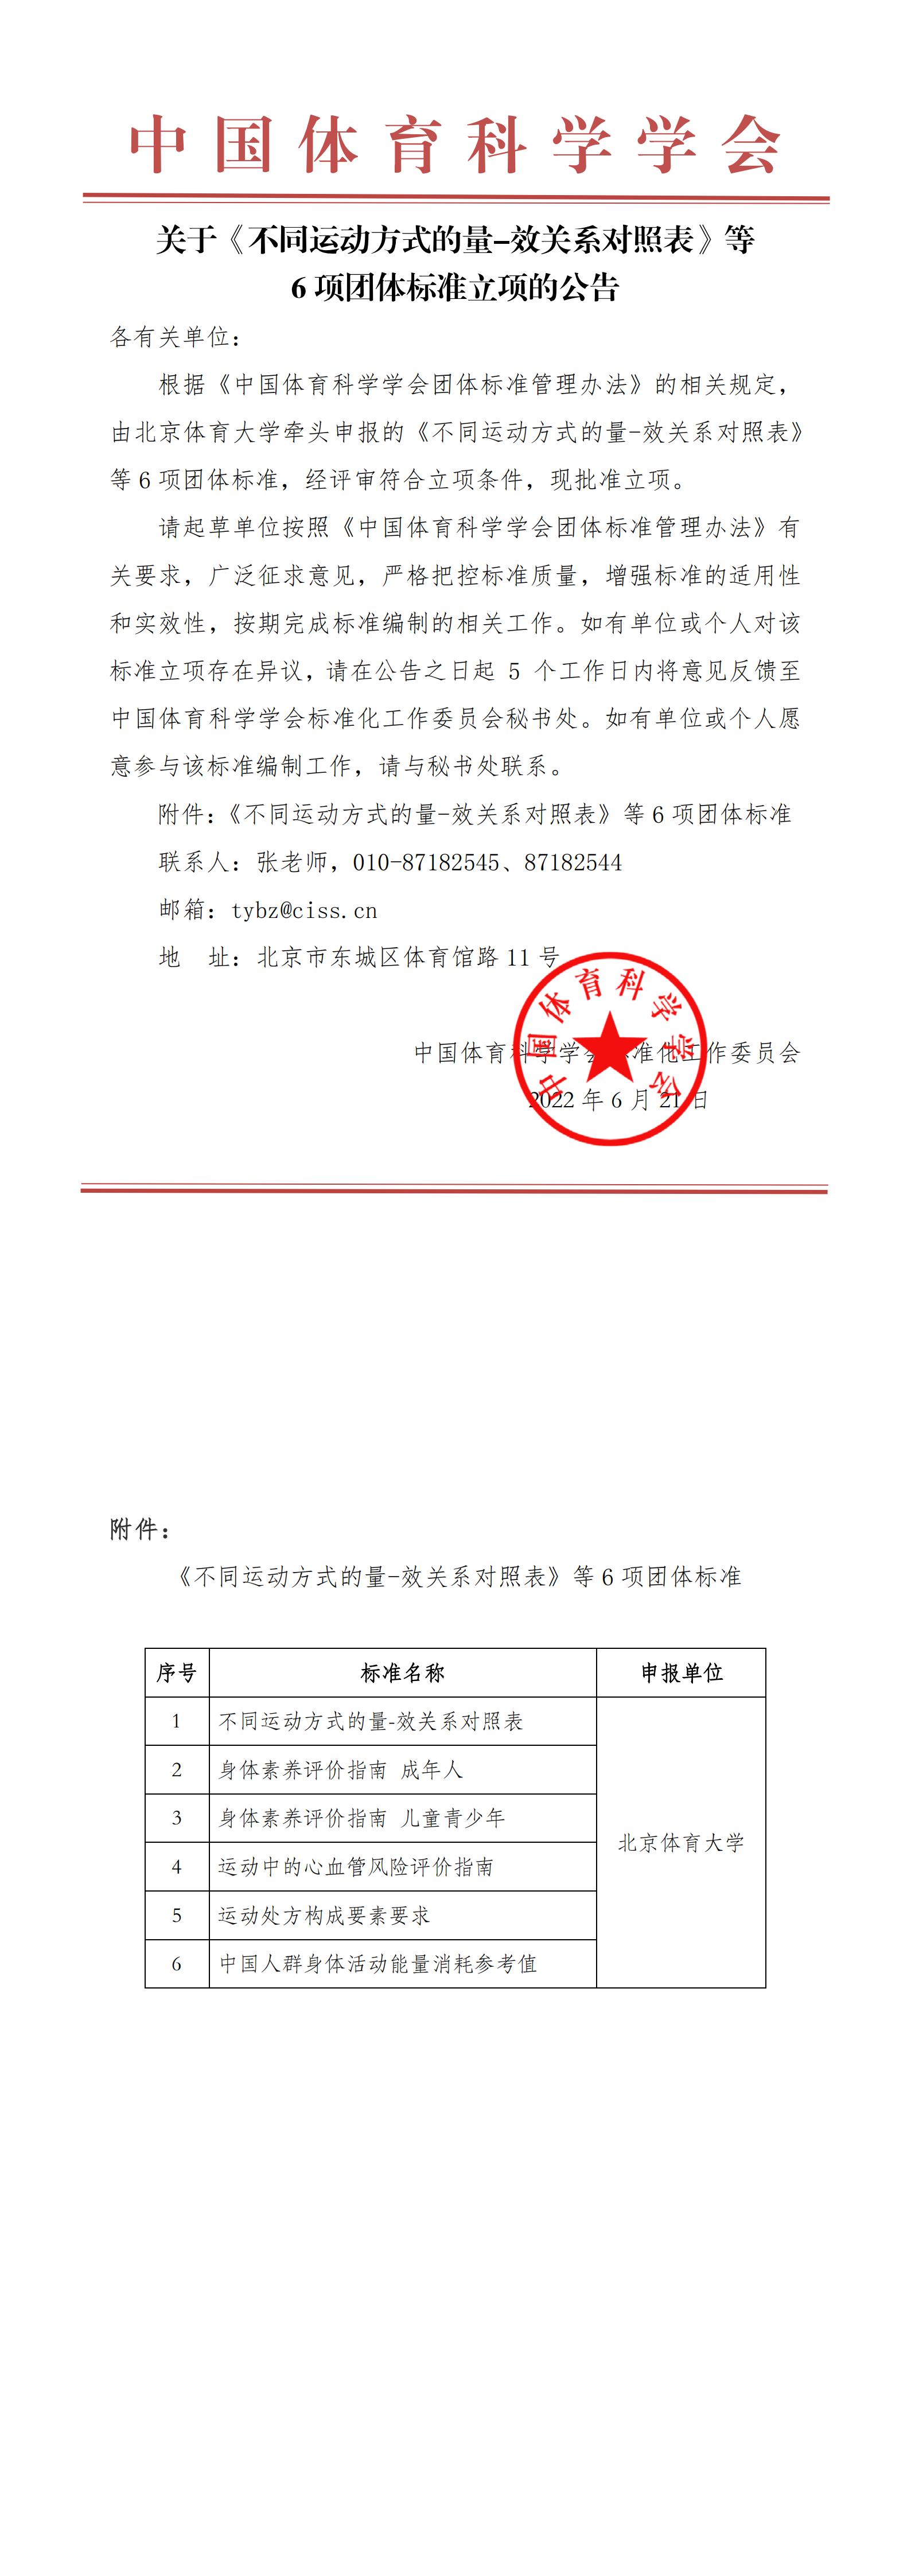 2022-06-17 中国体育科学学会pg电子招财猫《不同运动方式的量-效关系对照表》等6项团体标准立项的公告(1)_00.jpg